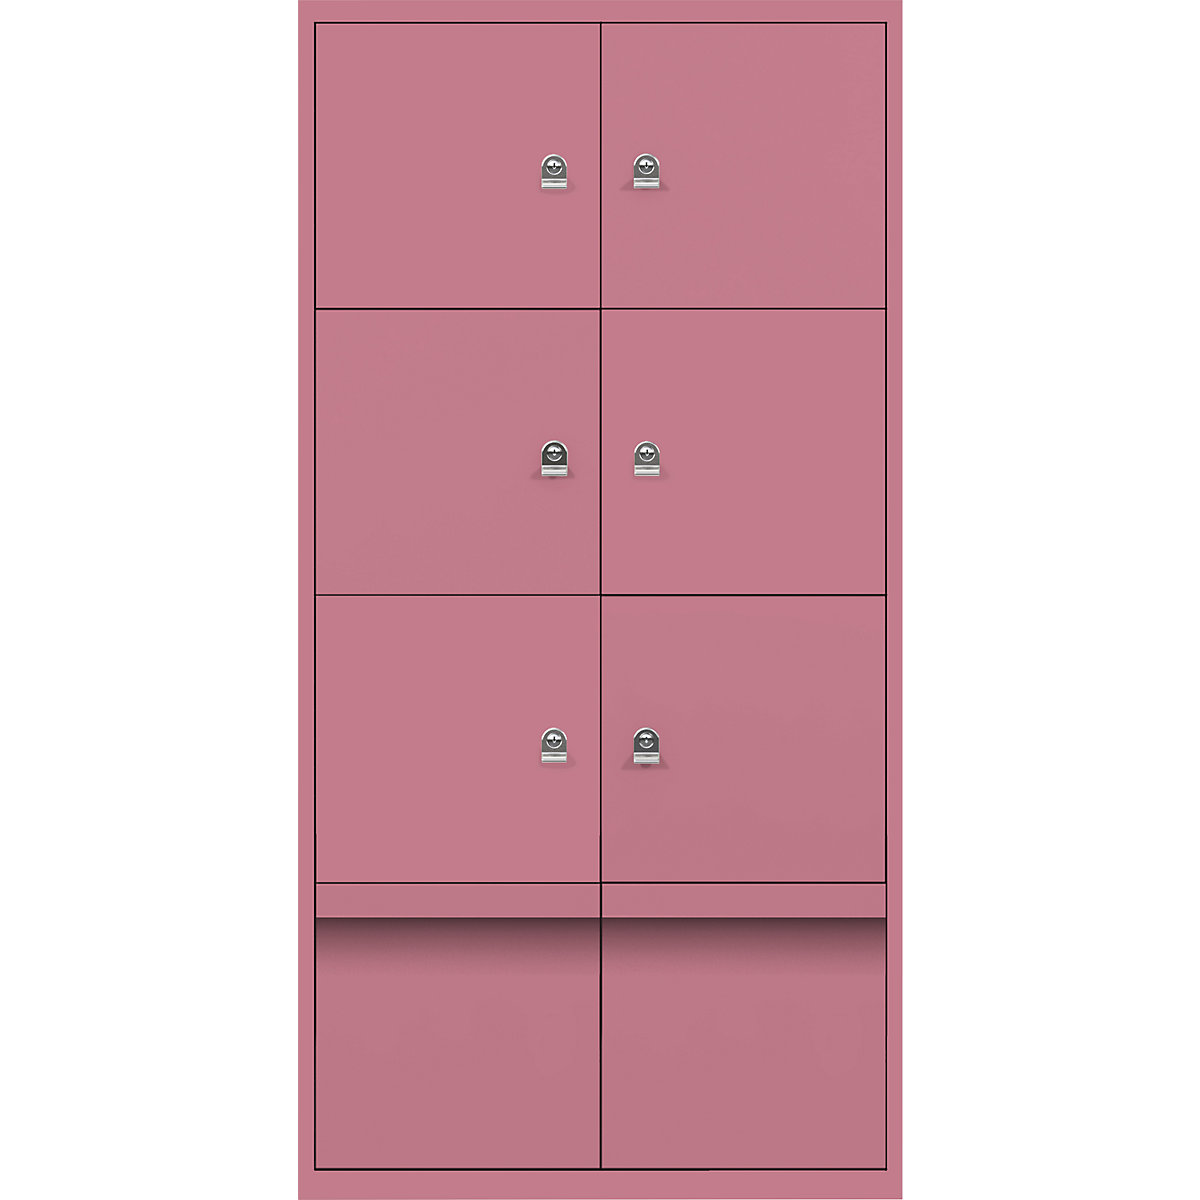 Omara s predelki z zaklepanjem LateralFile™ – BISLEY, 6 predelkov z zaklepanjem in 2 predala, višina po 375 mm, roza barve-17